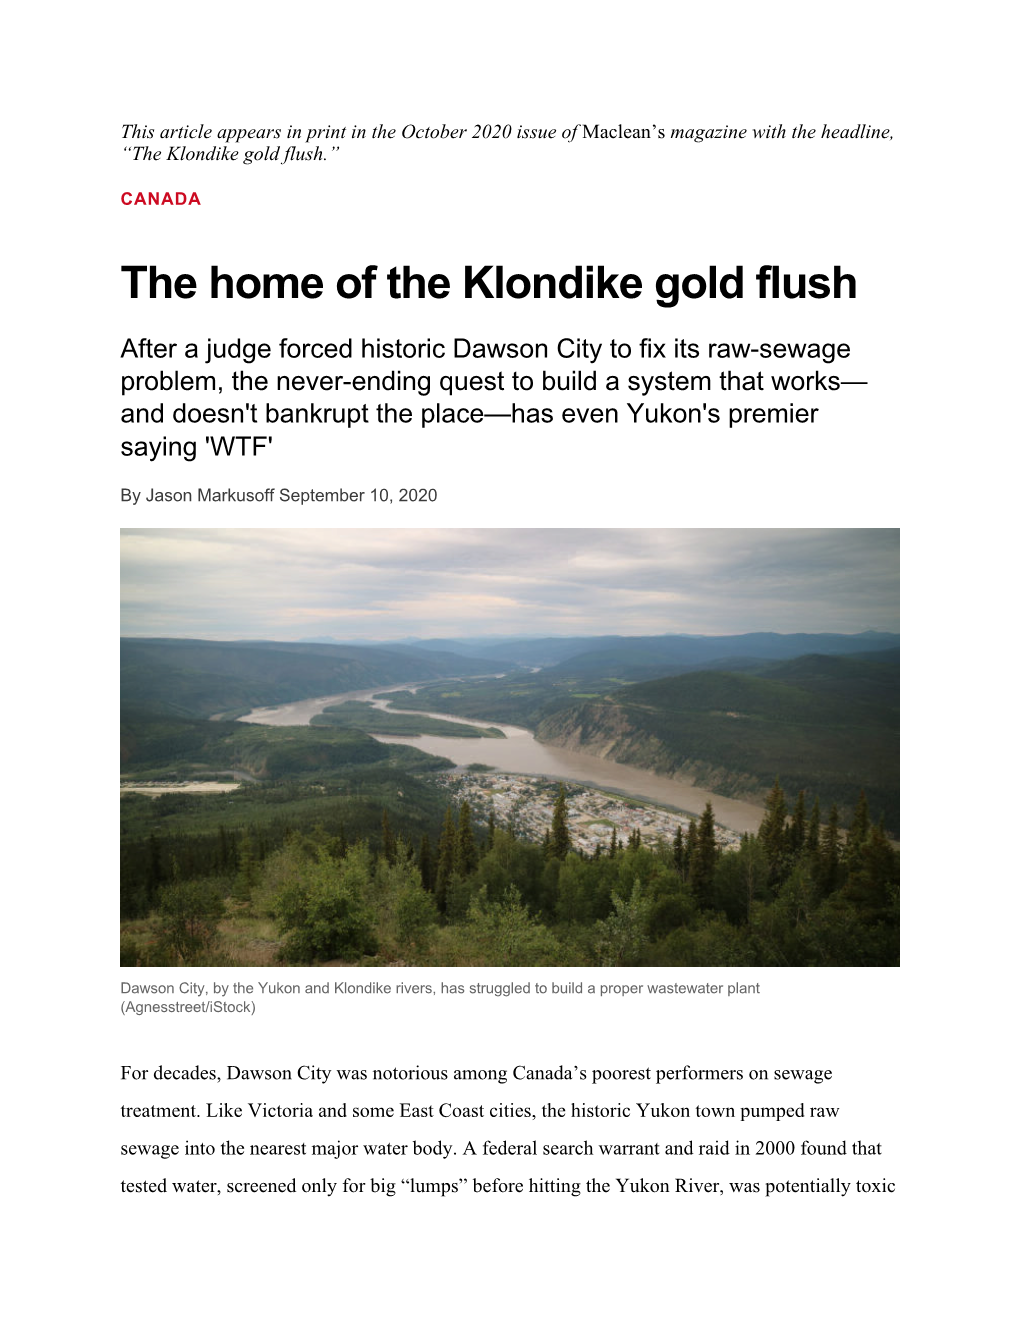 Home of the Klondike Gold Flush